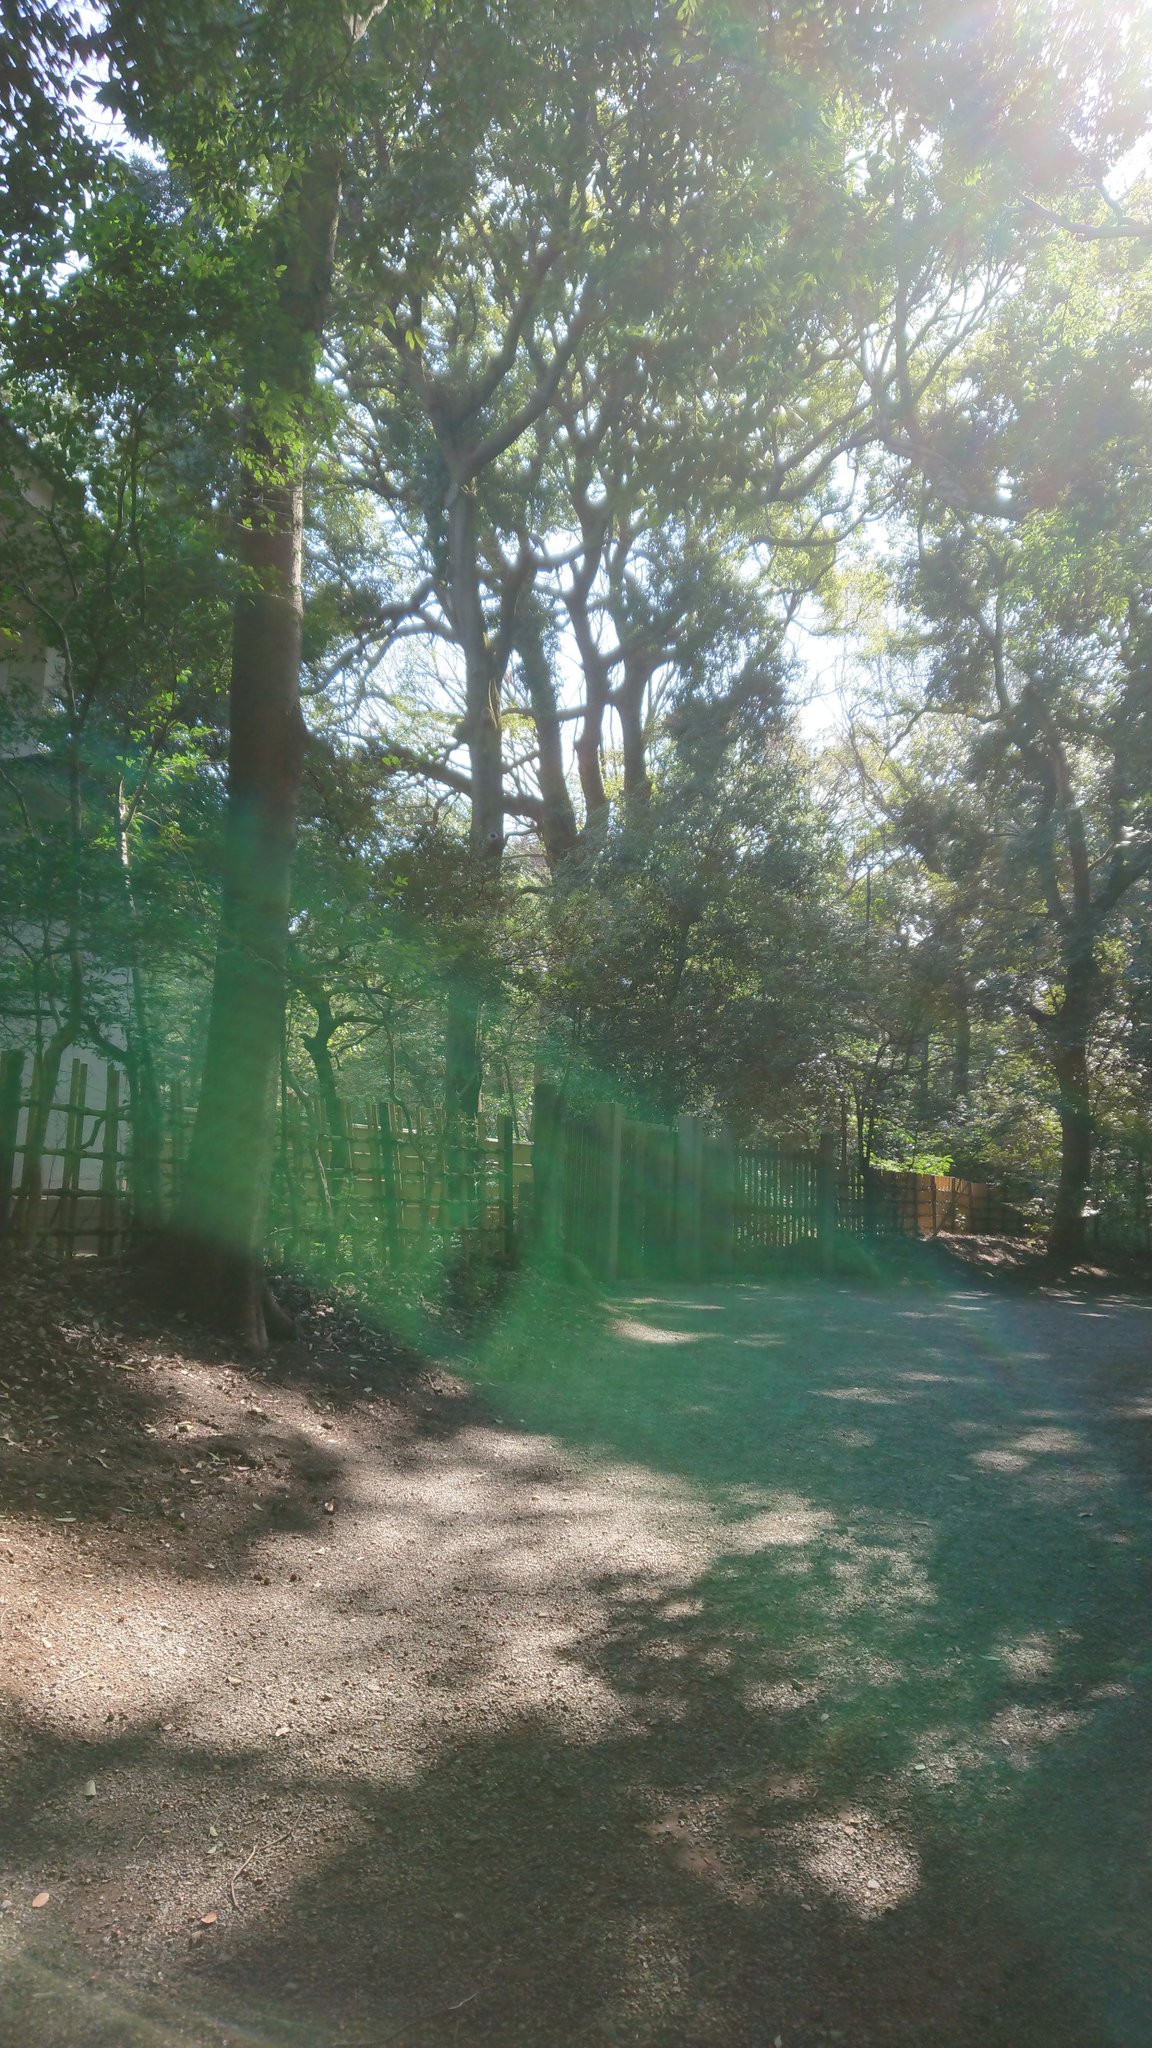 Kuni 写真を見返していたら 今年2月に行った明治神宮でも 緑の光 オーブ が写っていました 明治神宮 オーブ スピリチュアル T Co Rgithretv3 Twitter